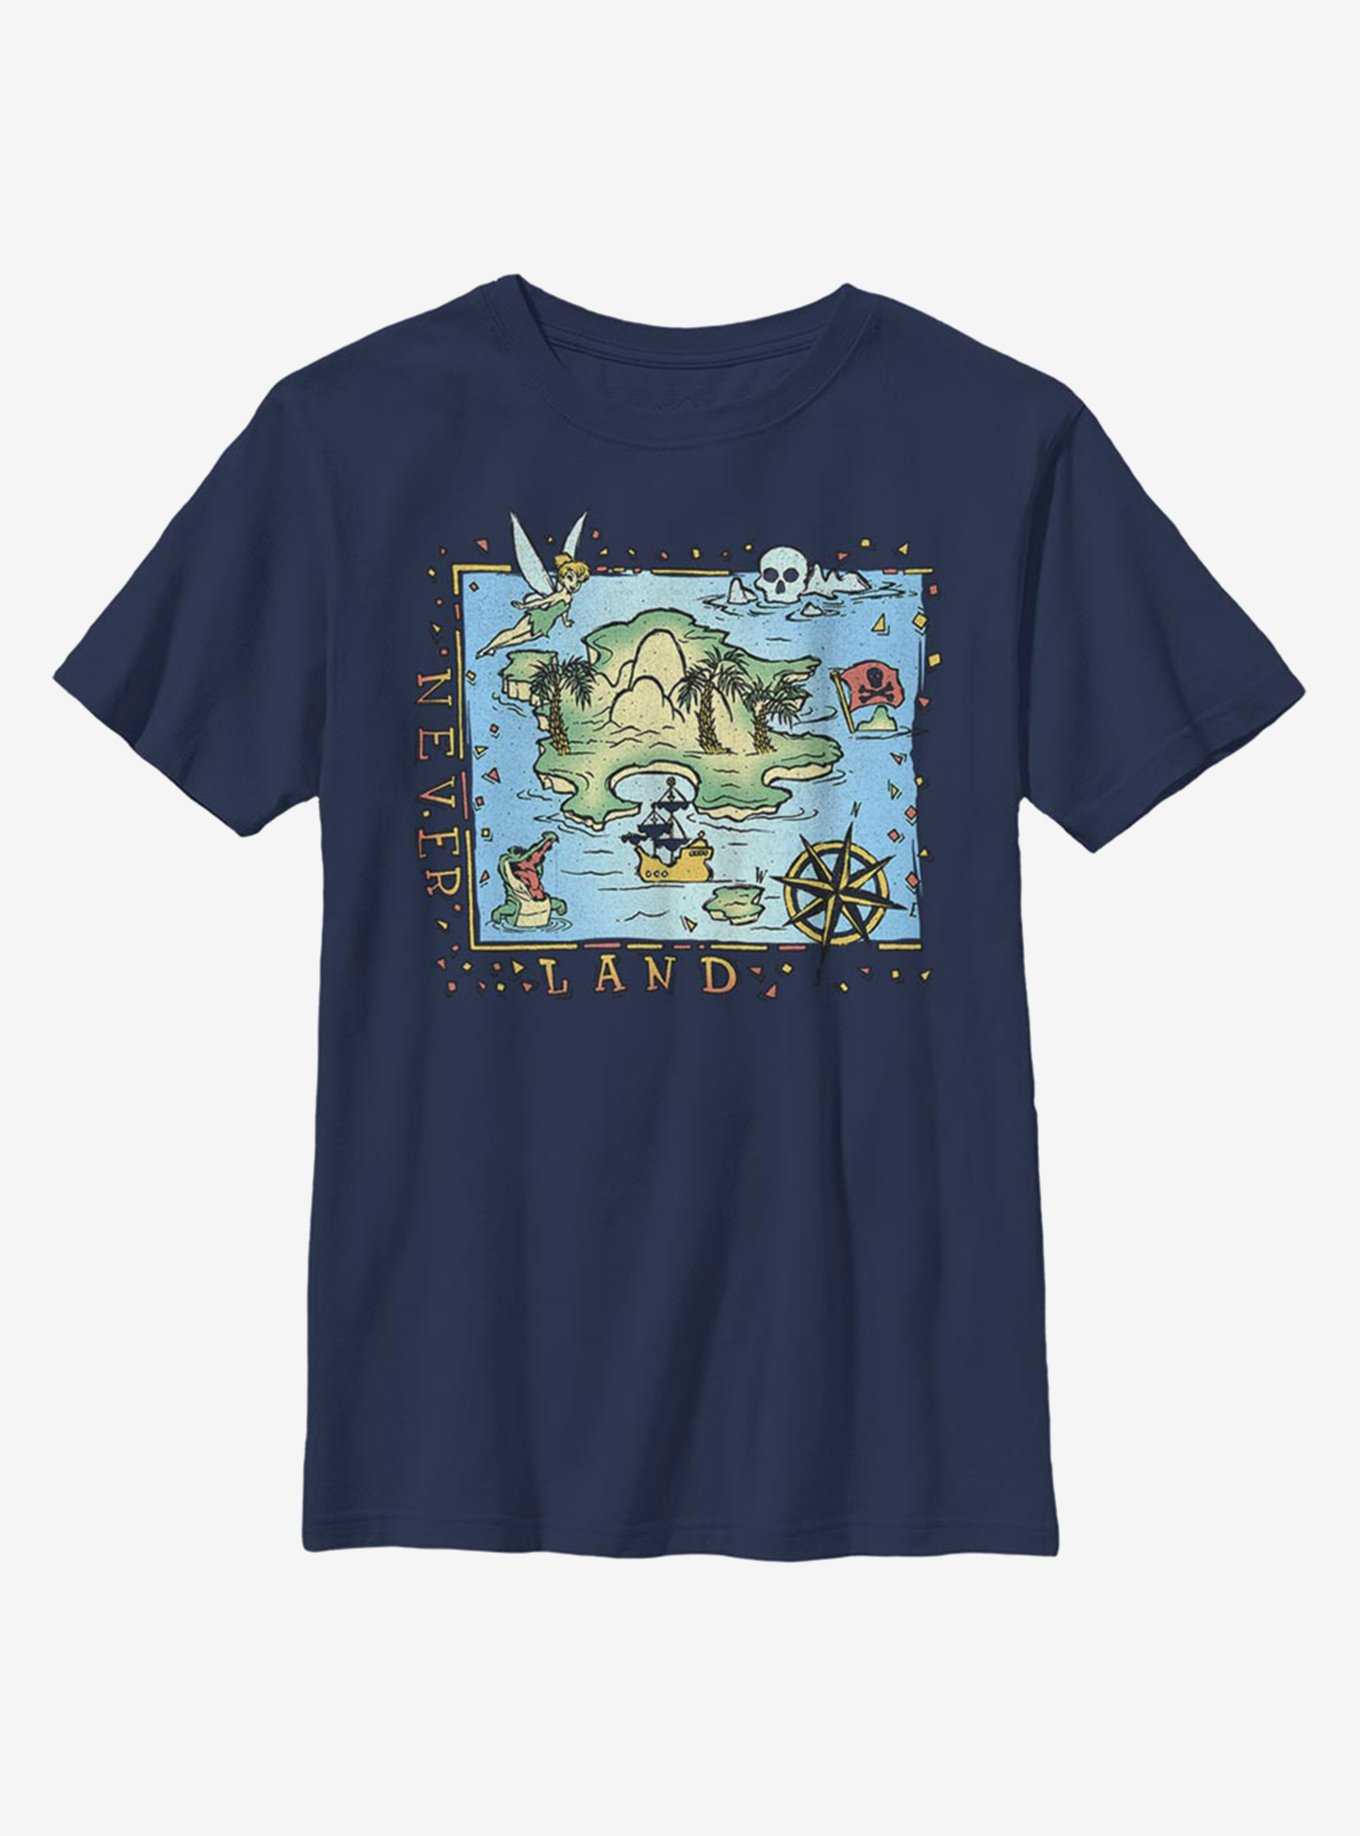 Disney Peter Pan Never Land Coast Youth T-Shirt, , hi-res